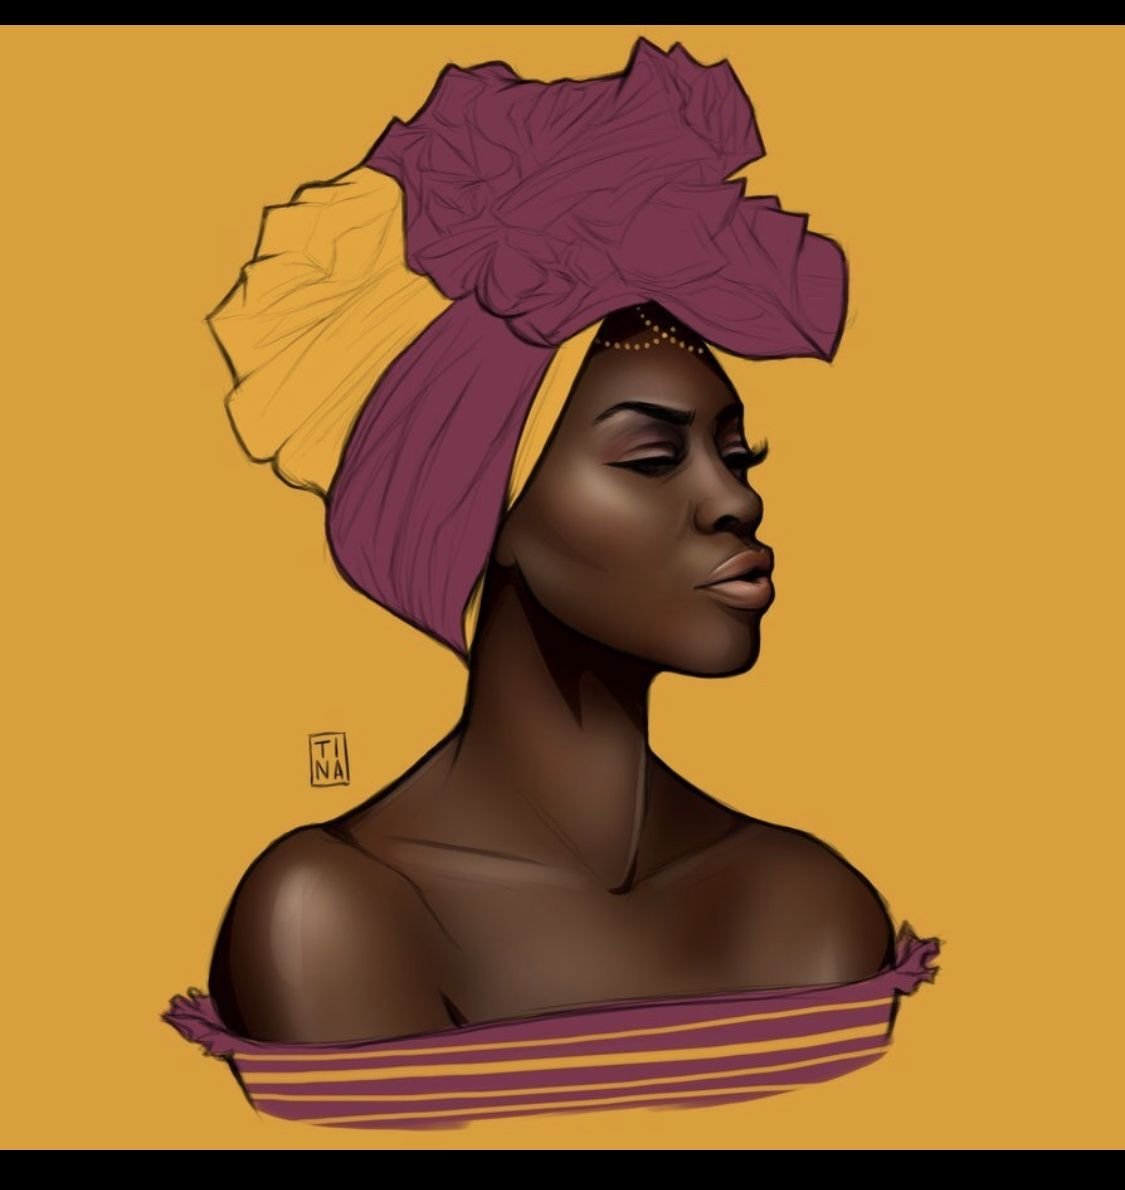 4 негритянки. Портрет негритянки. Темнокожая женщина арт. Афроамериканки арт. Портрет афроамериканки.